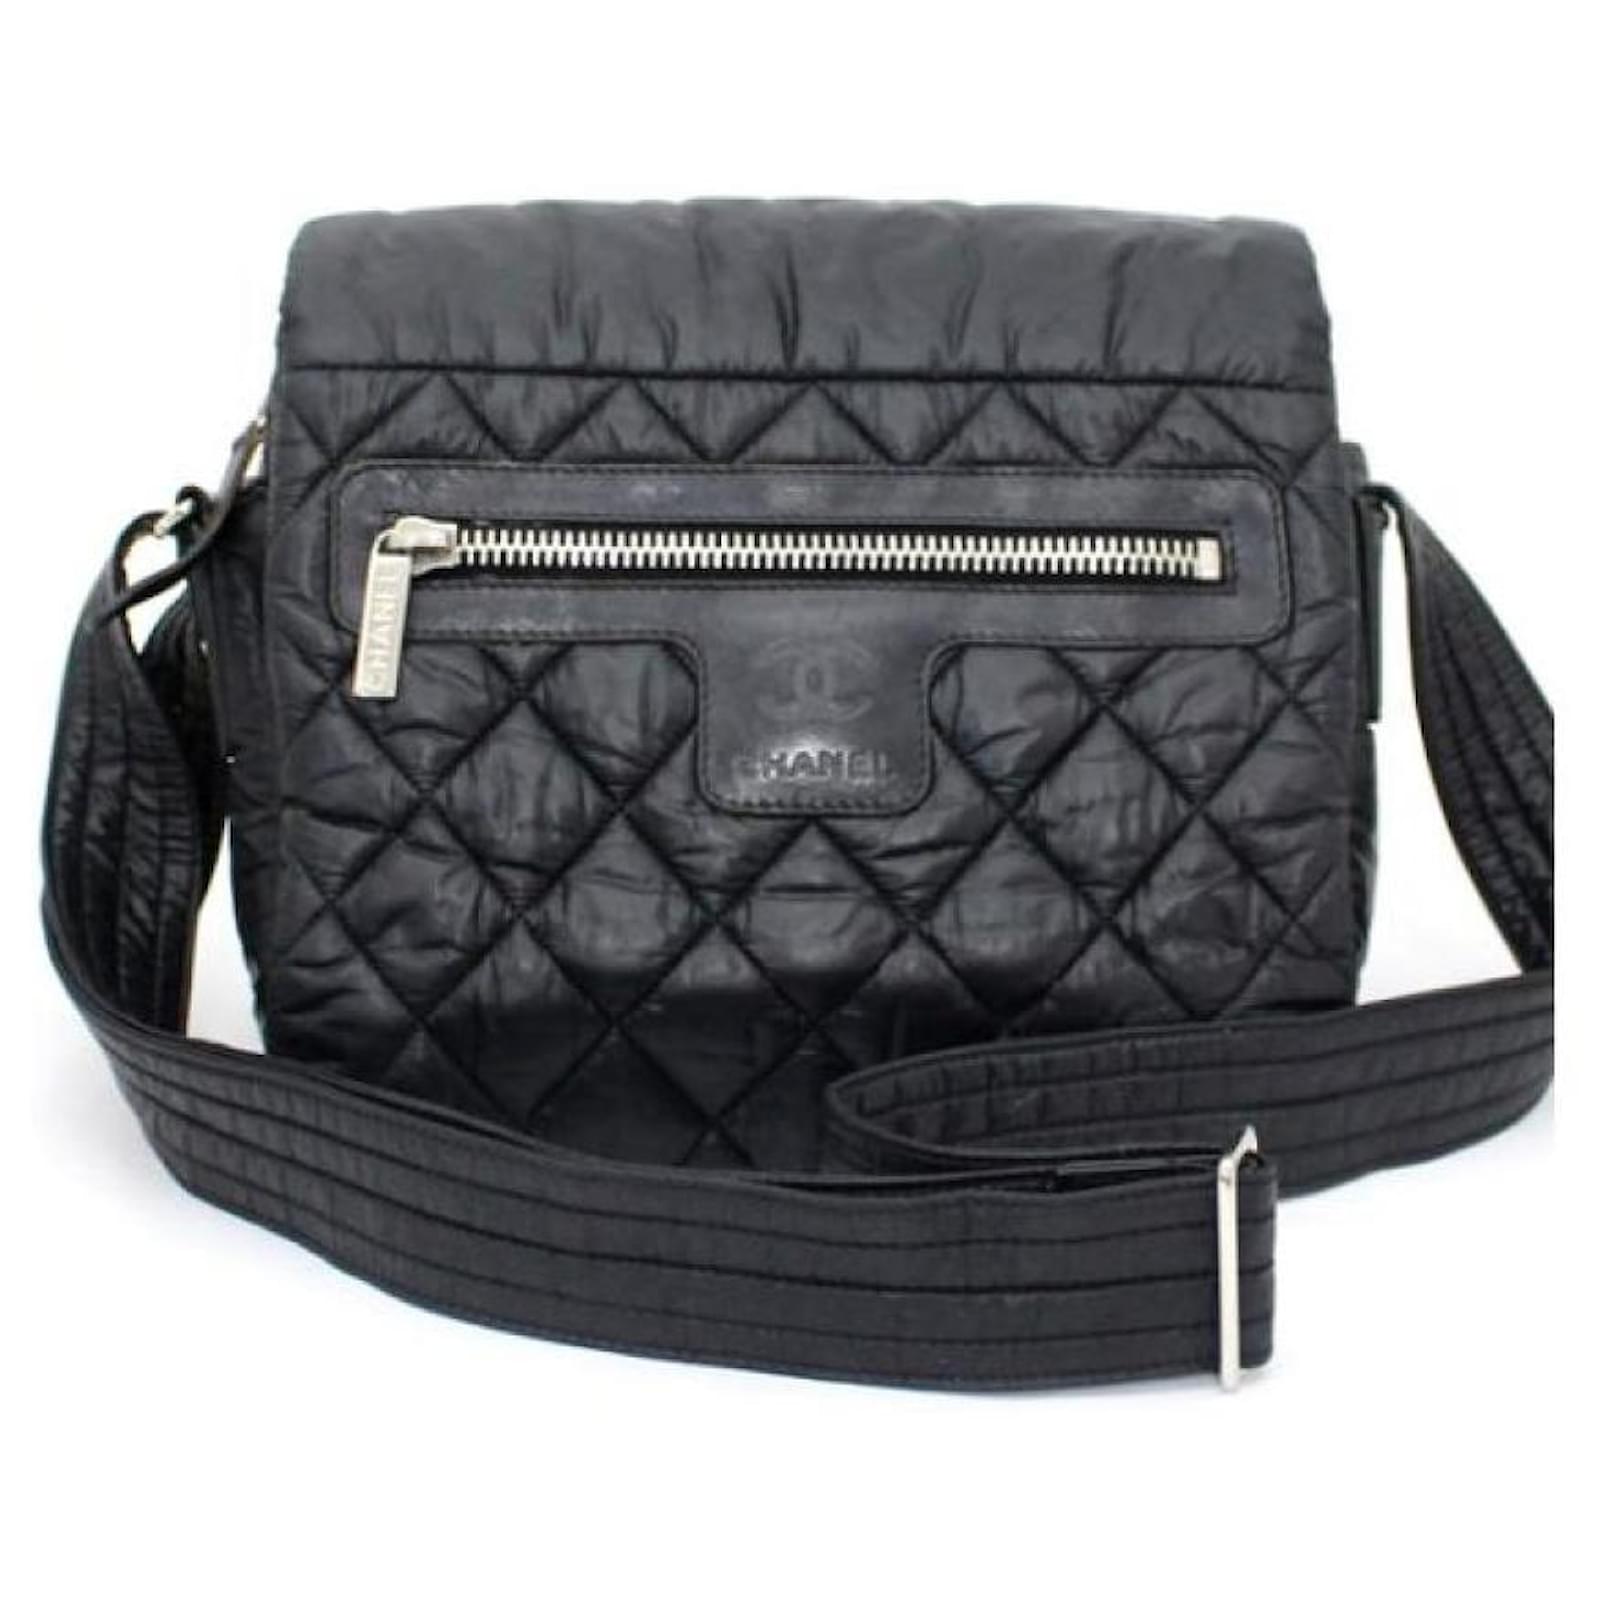 CHANEL] Chanel Coco Cocoon shoulder bag Nylon Black Diagonal